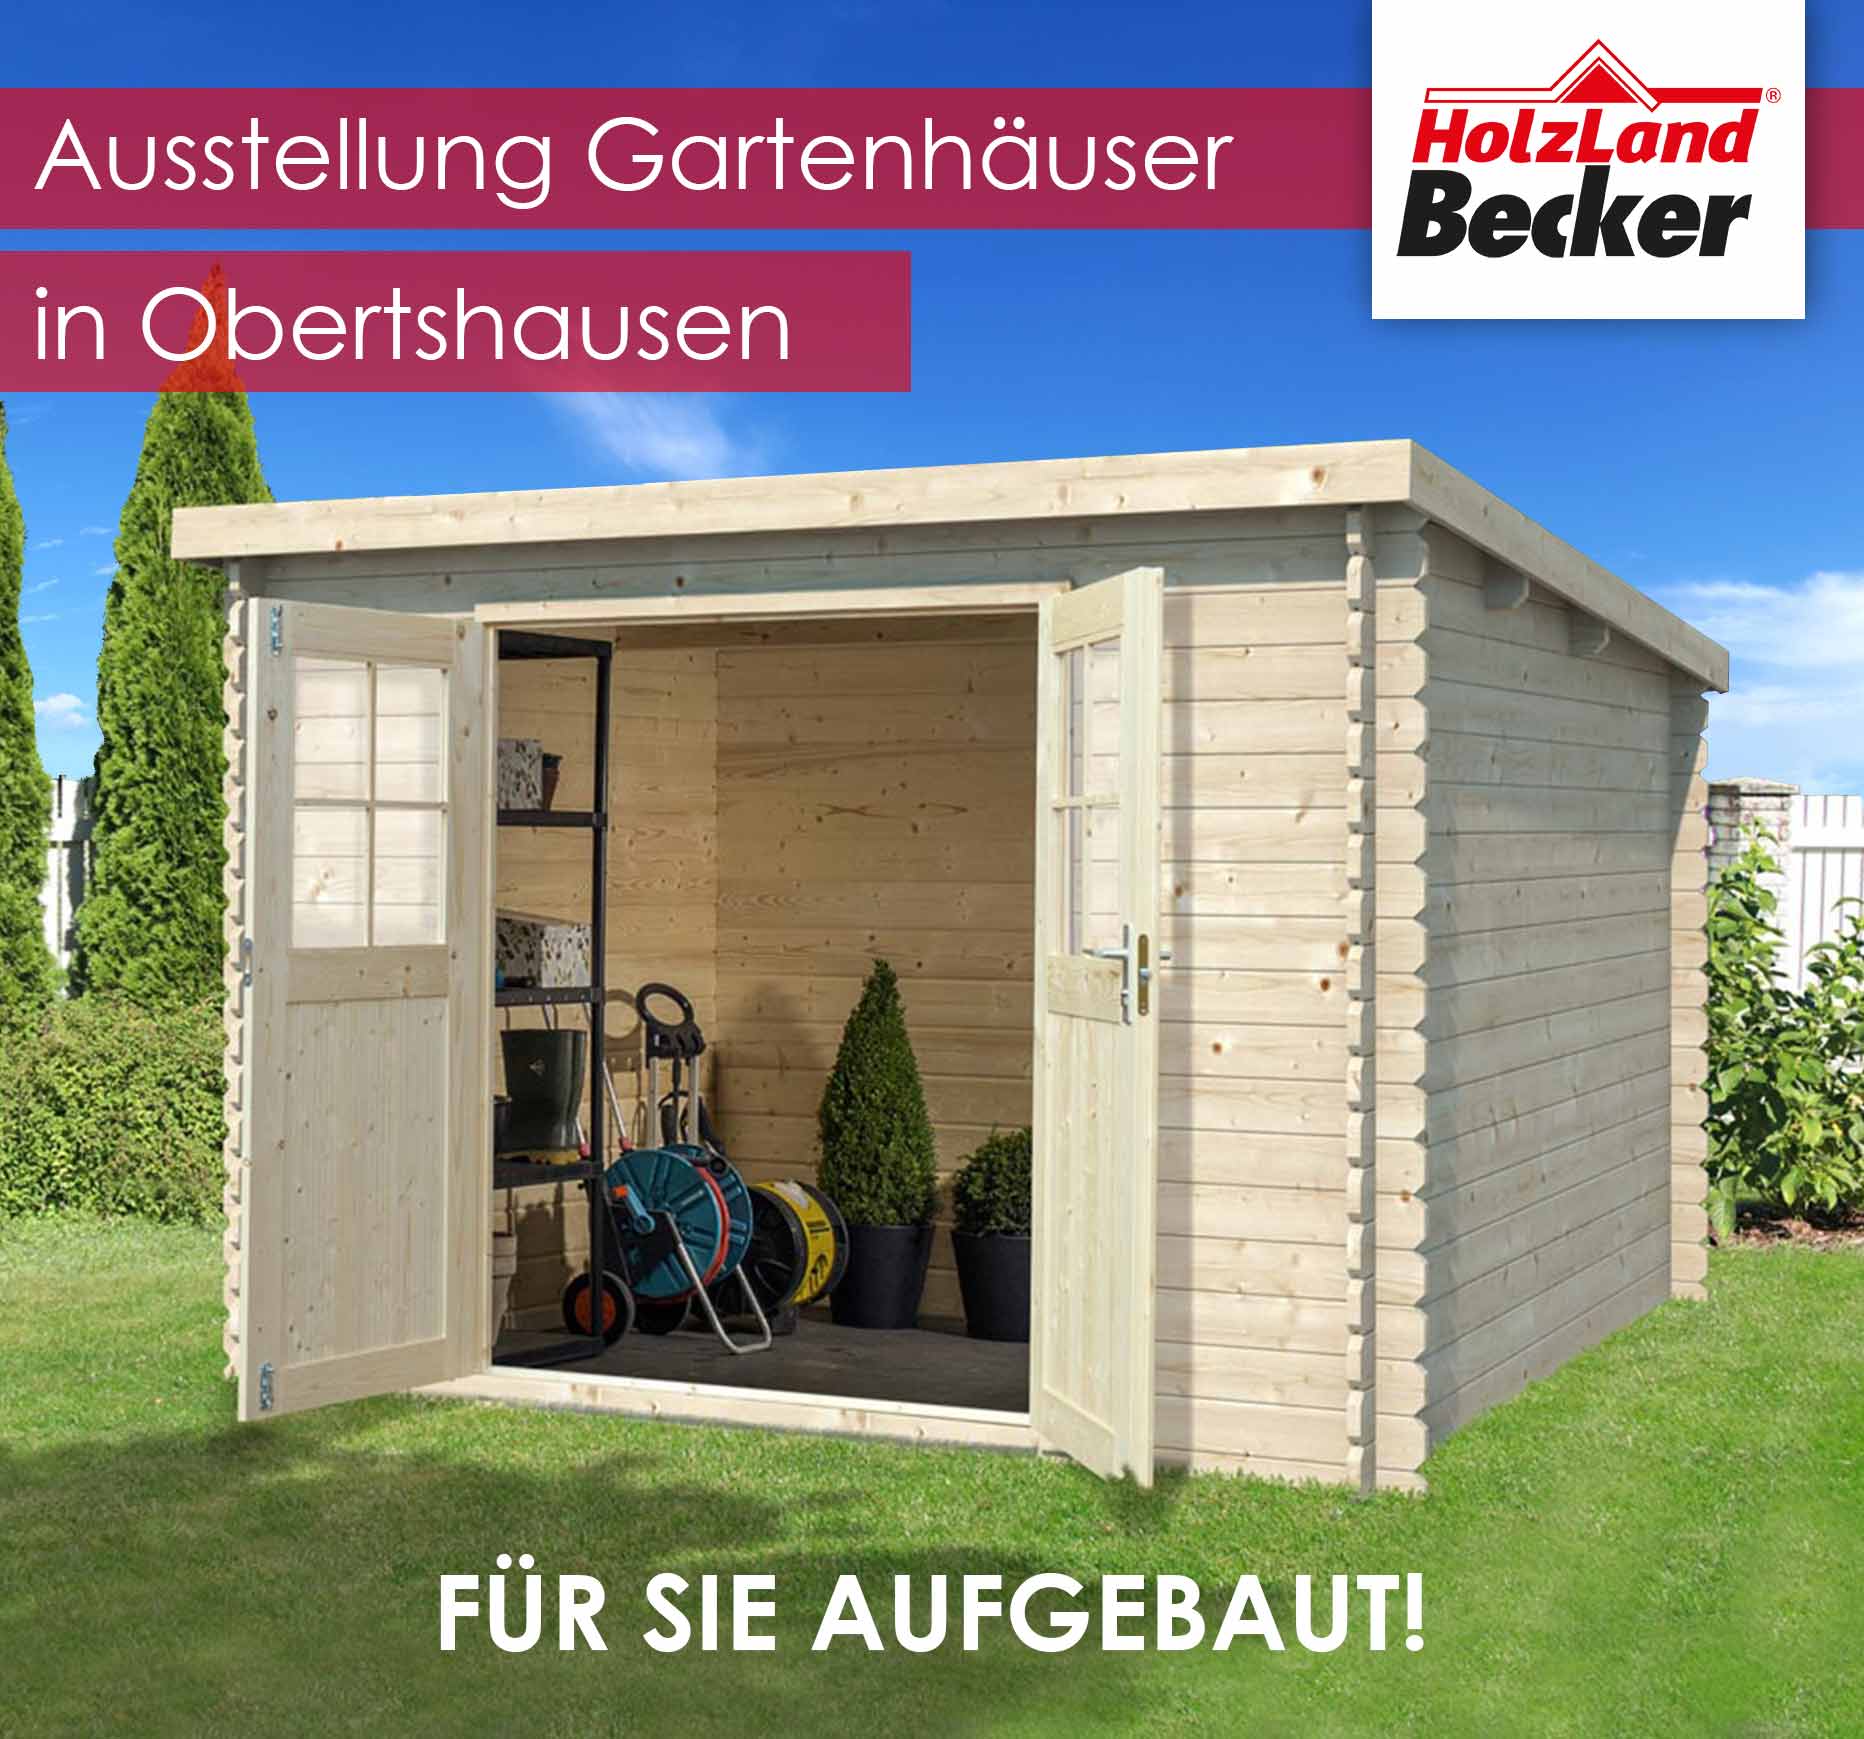 Ausstellung Gartenhauser In Obertshausen News Unternehmen Holzland Becker